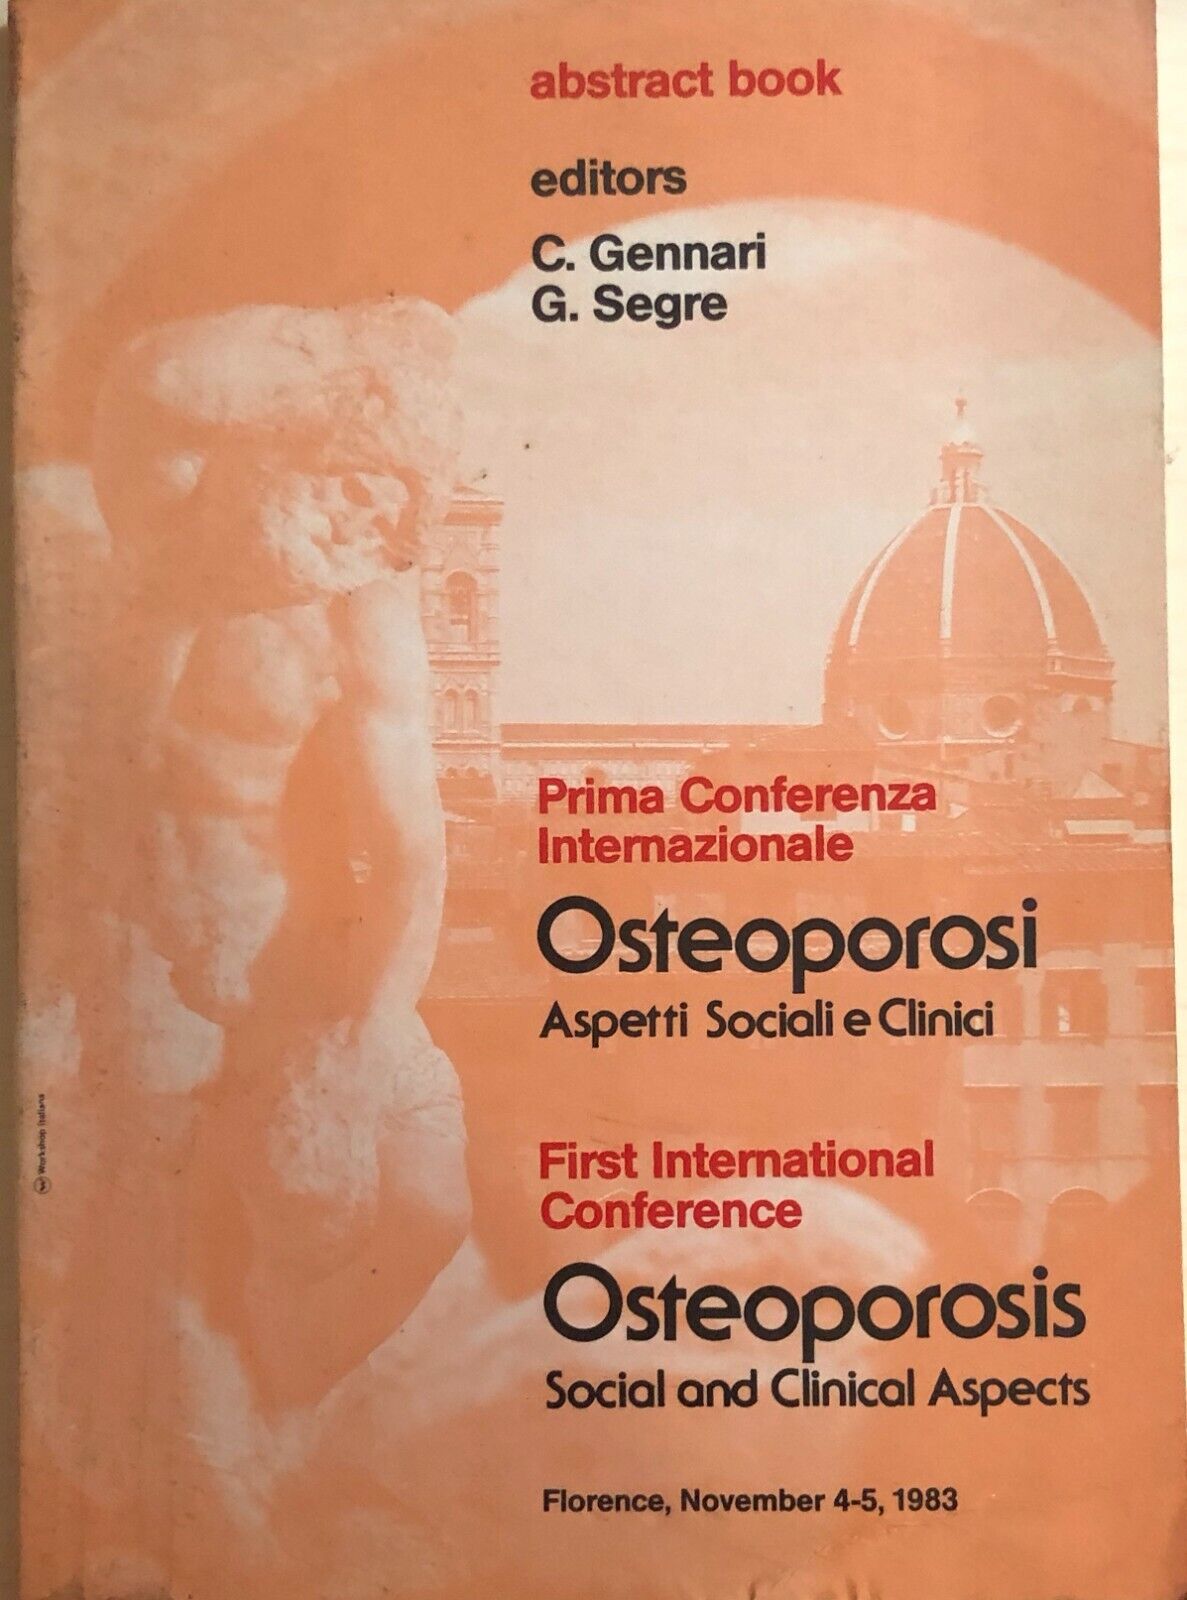 Osteoporosi Aspetti sociali e clinici di Aa.vv., 1983, Abstract Book